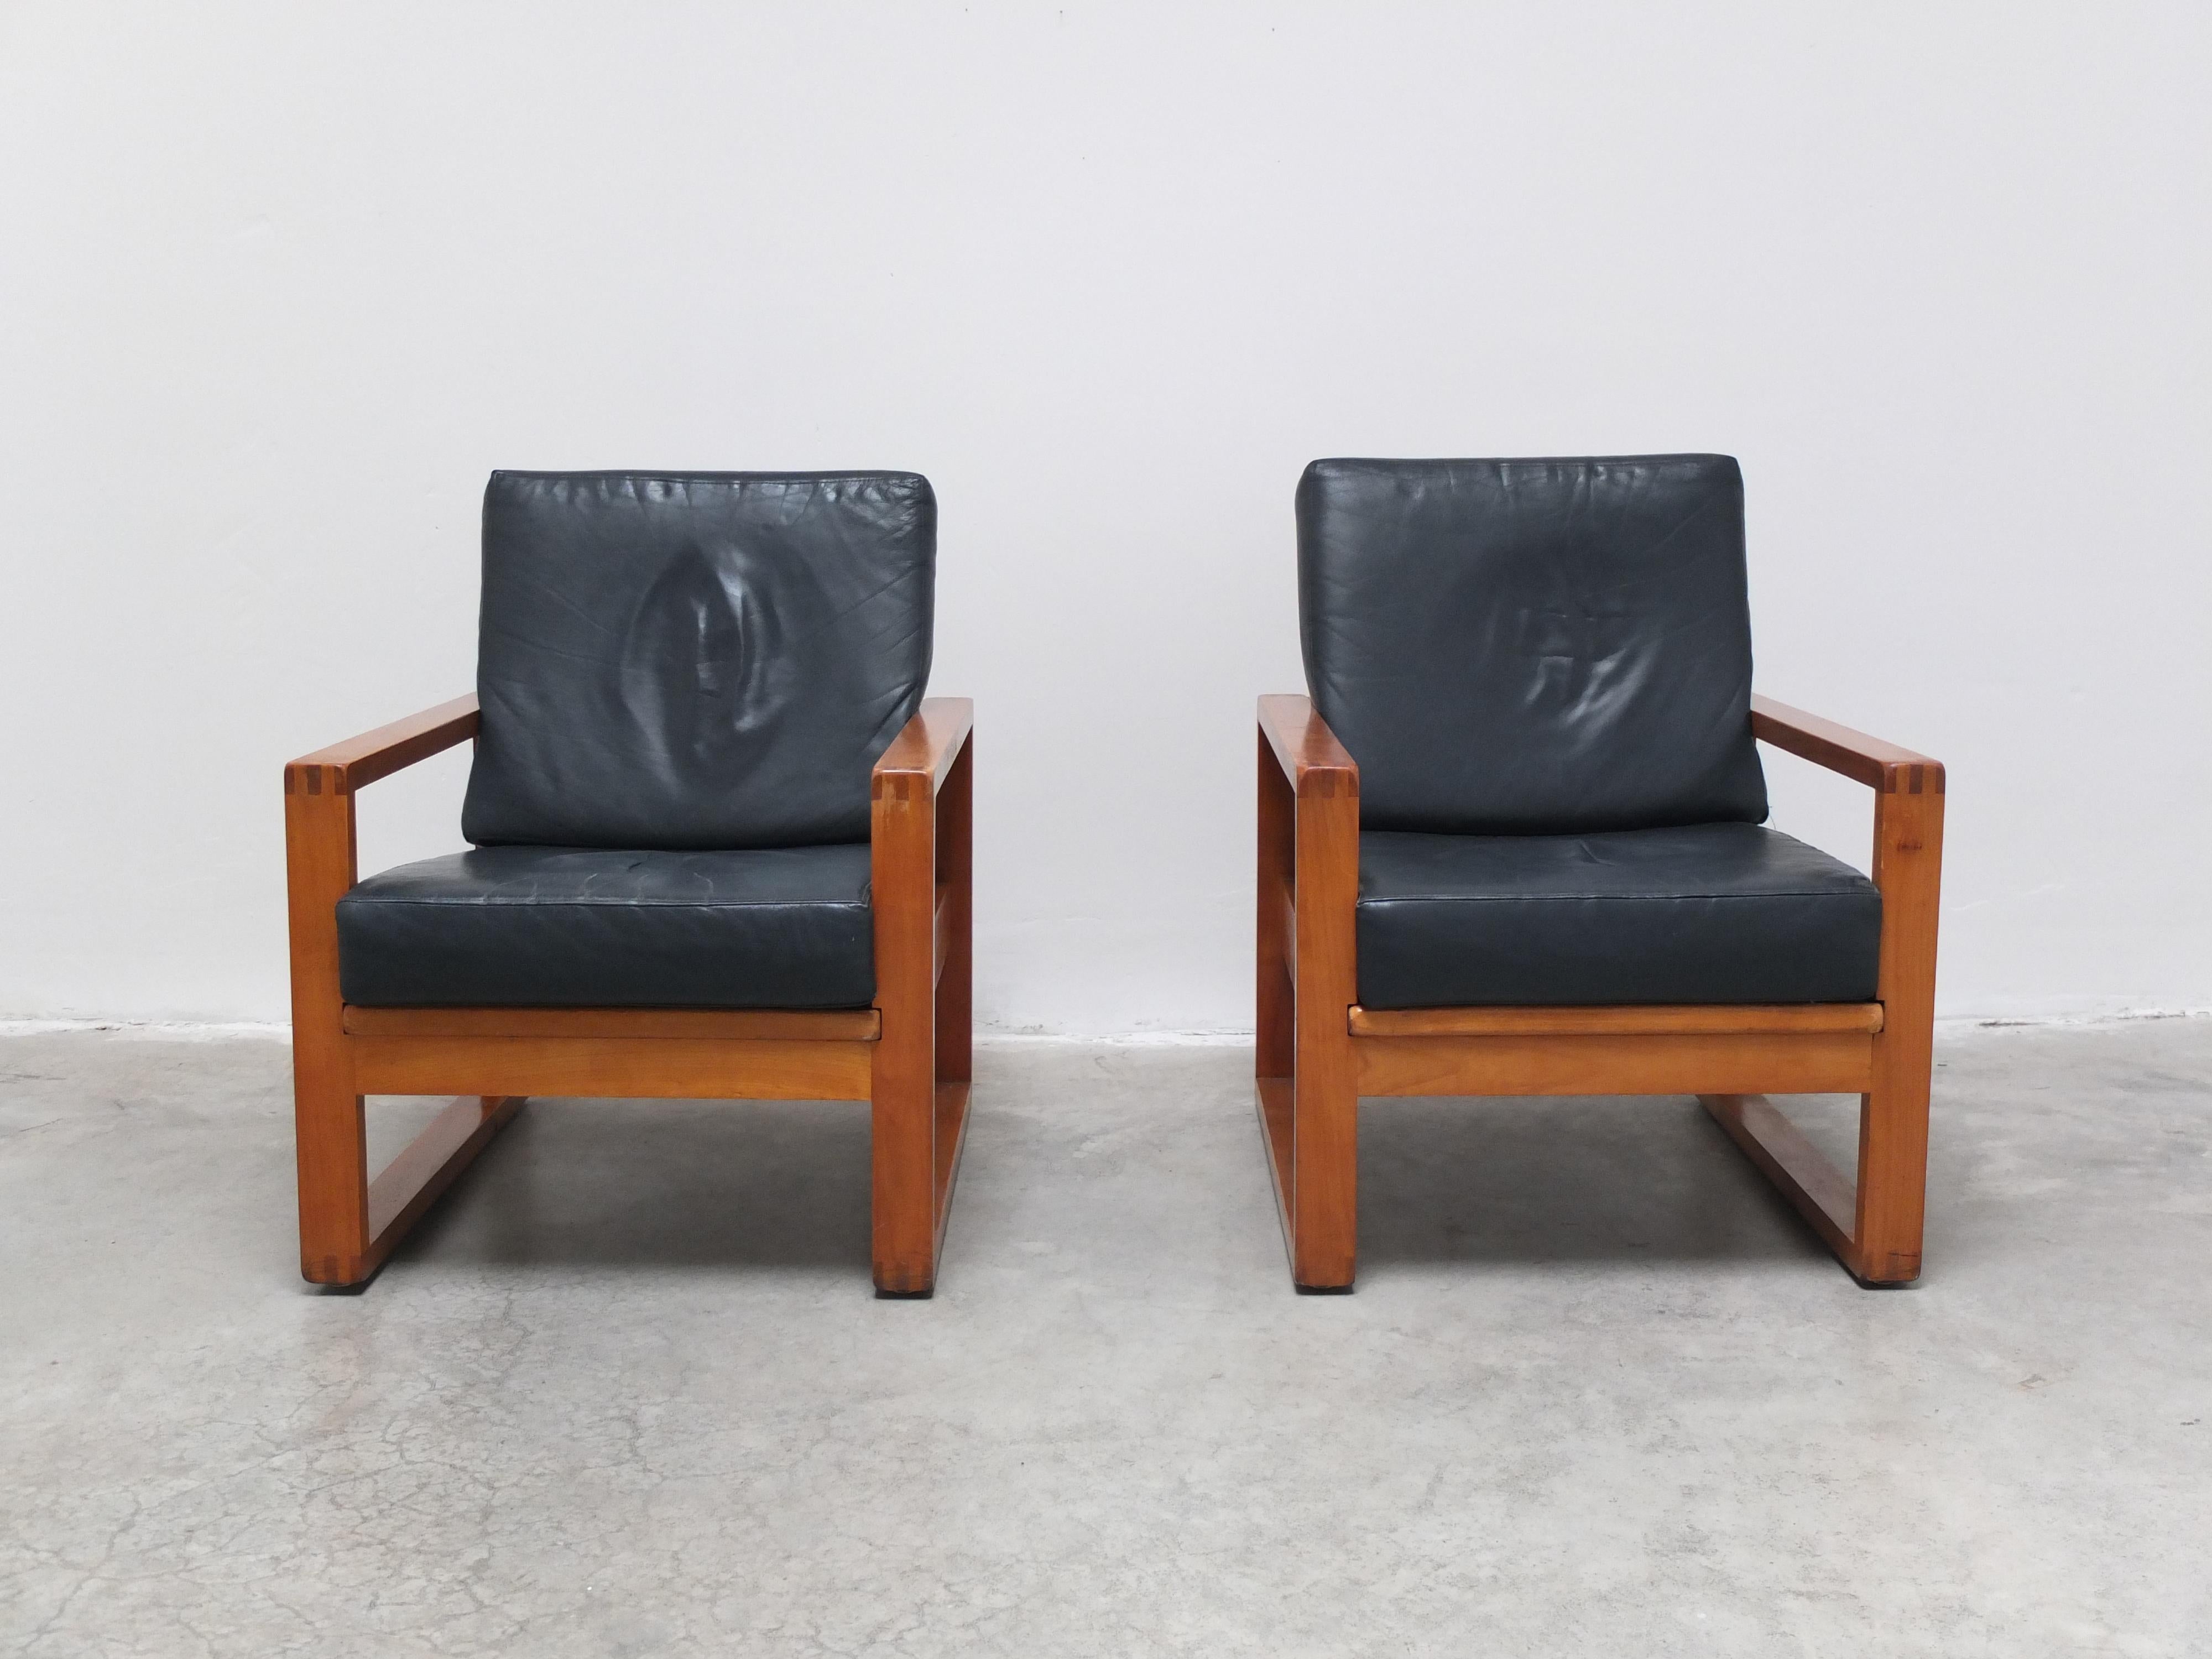 Exceptionnelle paire de chaises de salon modernistes. Elles sont produites dans l'usine de Van DEN-Pauvers à Gand dans les années 1960 par un employé qui voulait se fabriquer de jolies chaises. Il s'est clairement inspiré du 